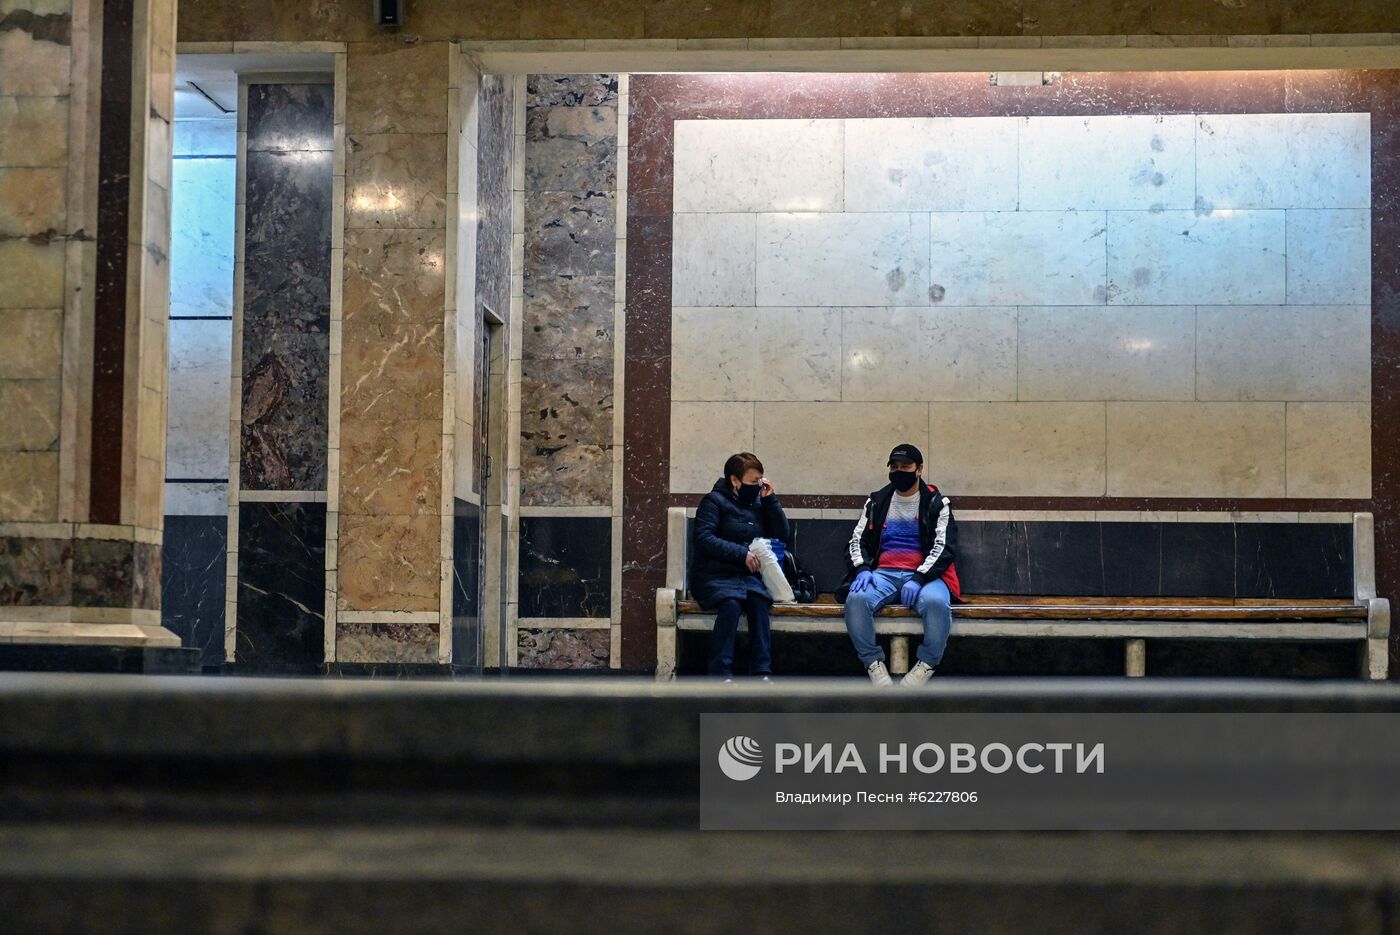 Московский метрополитен в период режима самоизоляции граждан